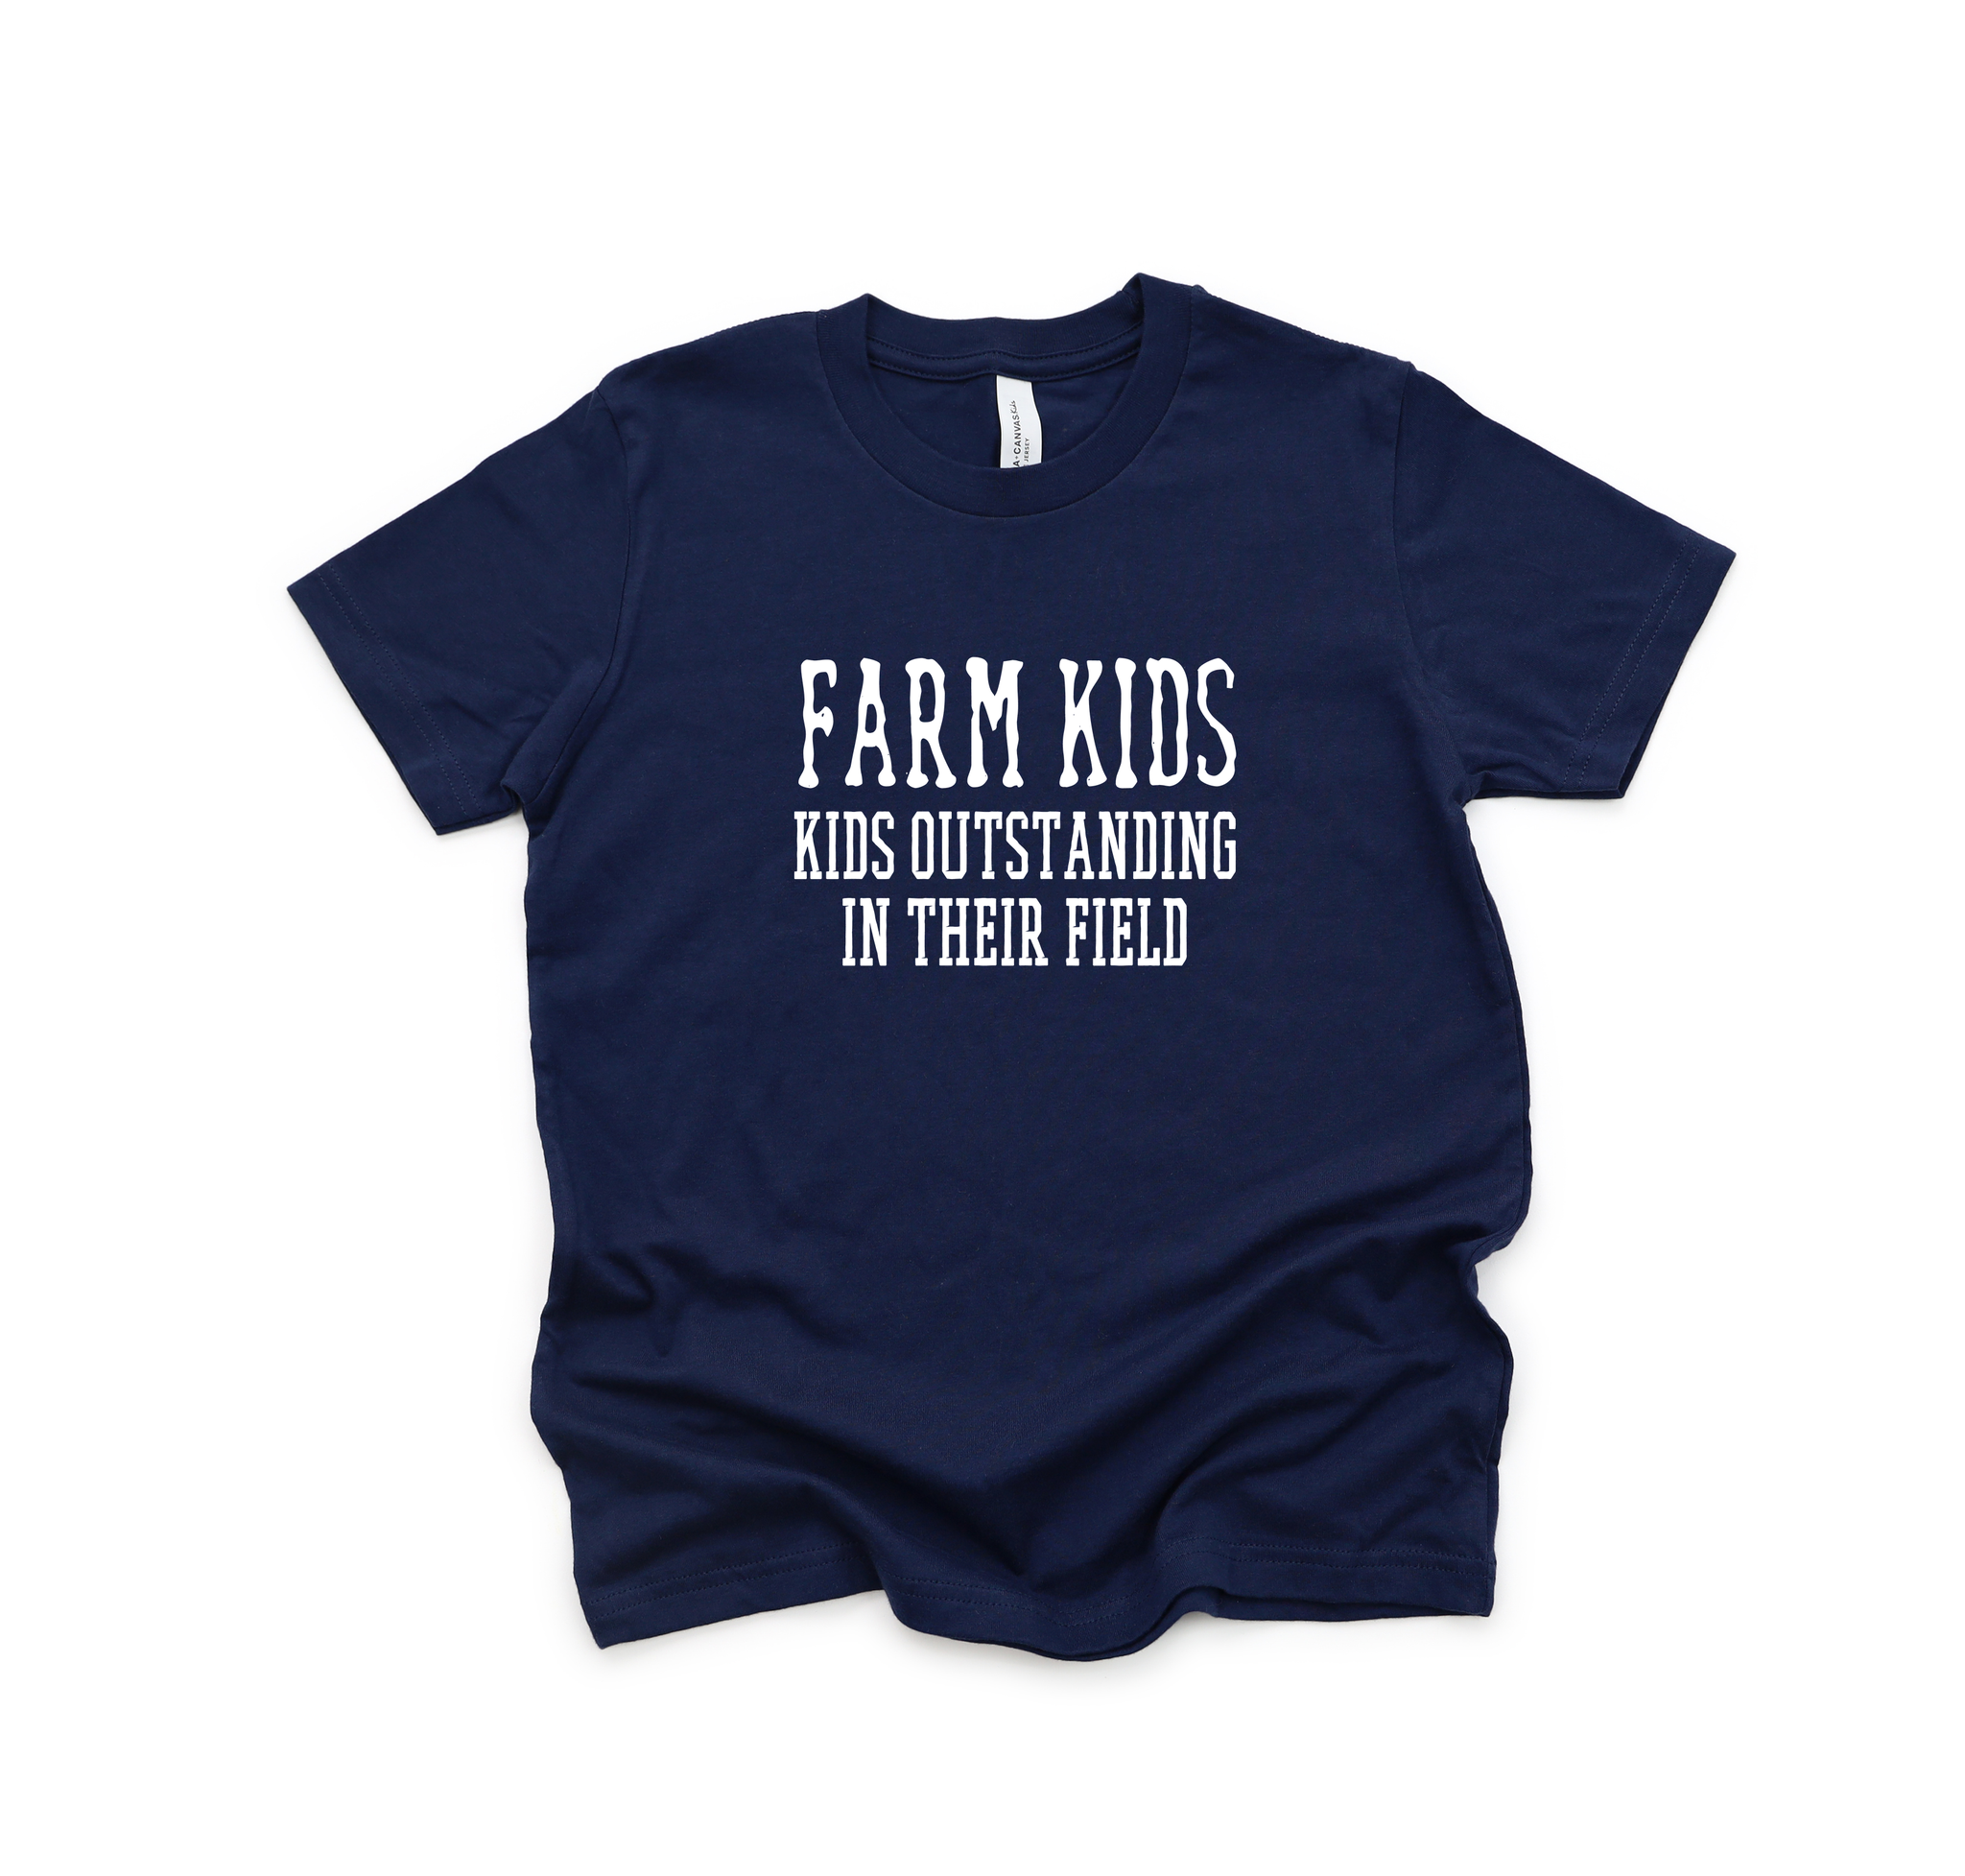 Farm Kids: Kids outstanding in their field